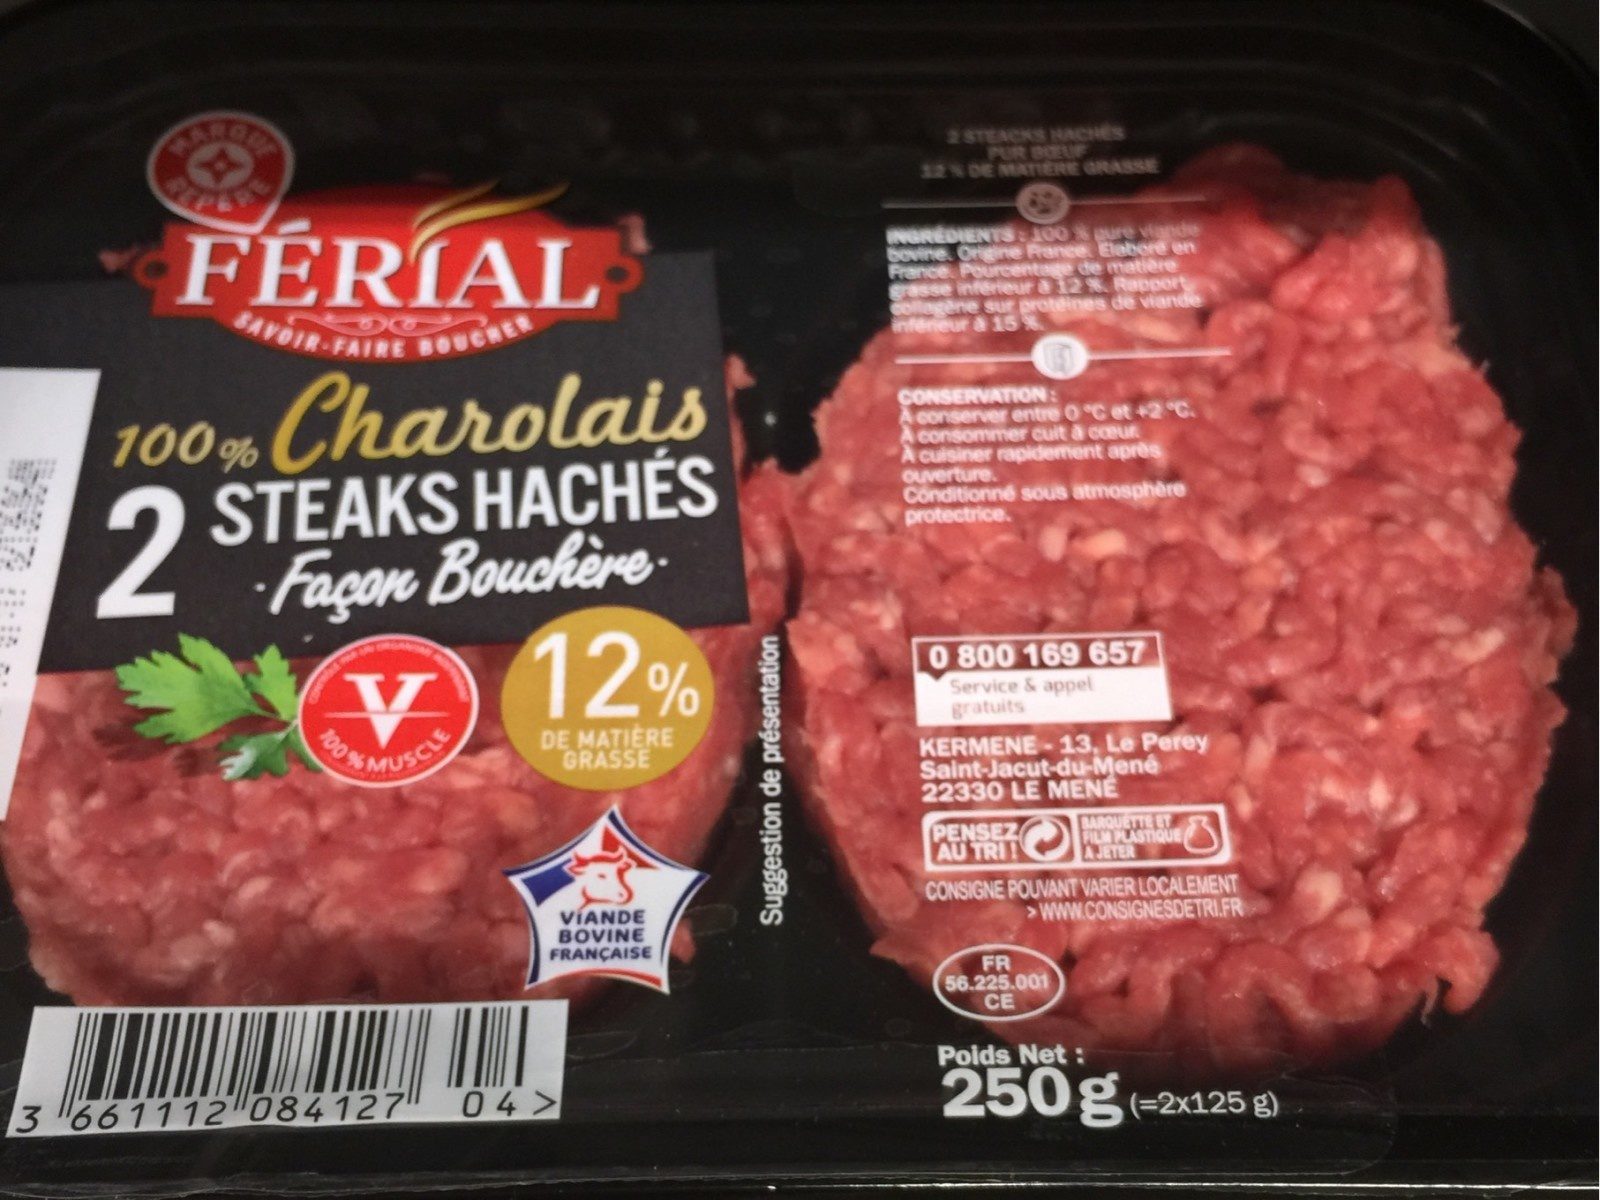 Steaks hachés 100% Charolais façon bouchère - Product - fr